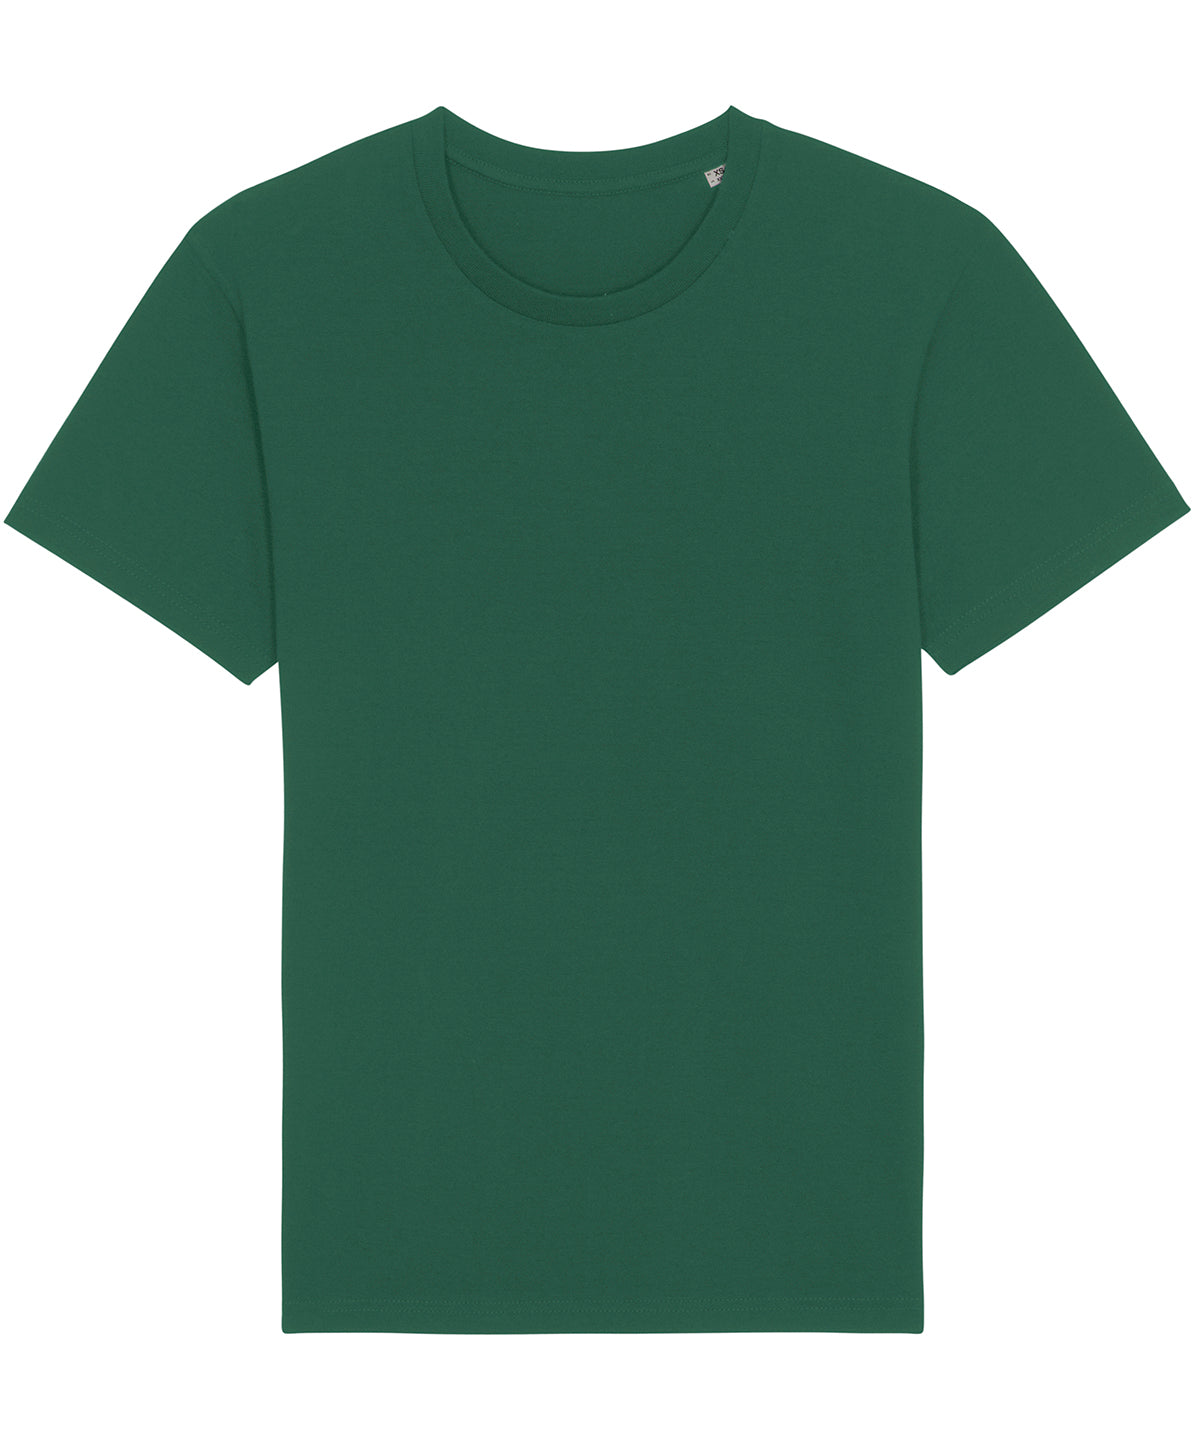 Stanley/Stella Rocker The Essential Unisex T-Shirt  Bottle Green